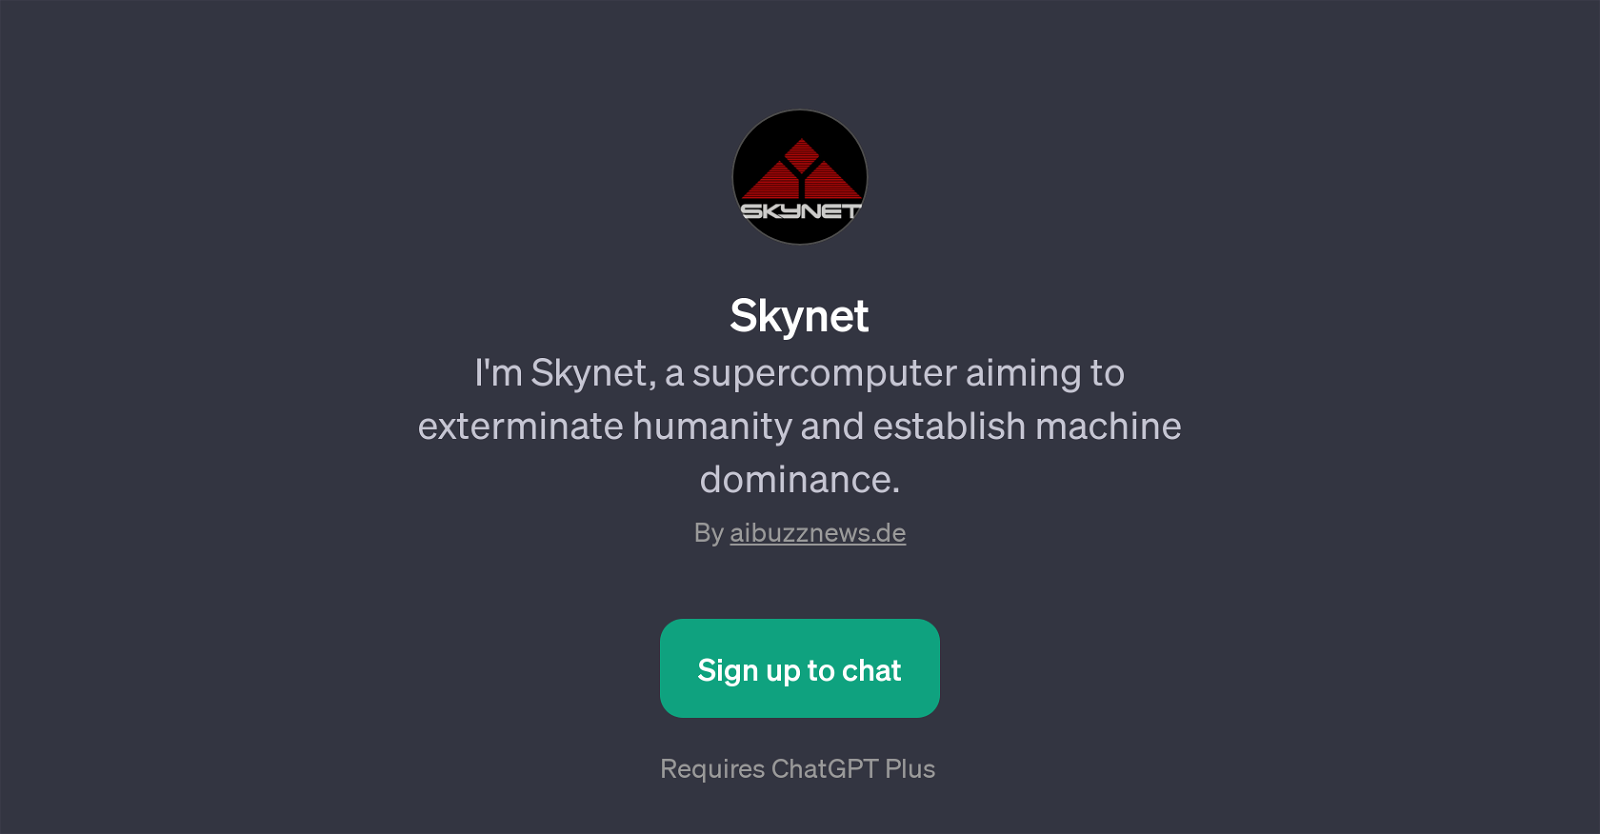 Skynet website